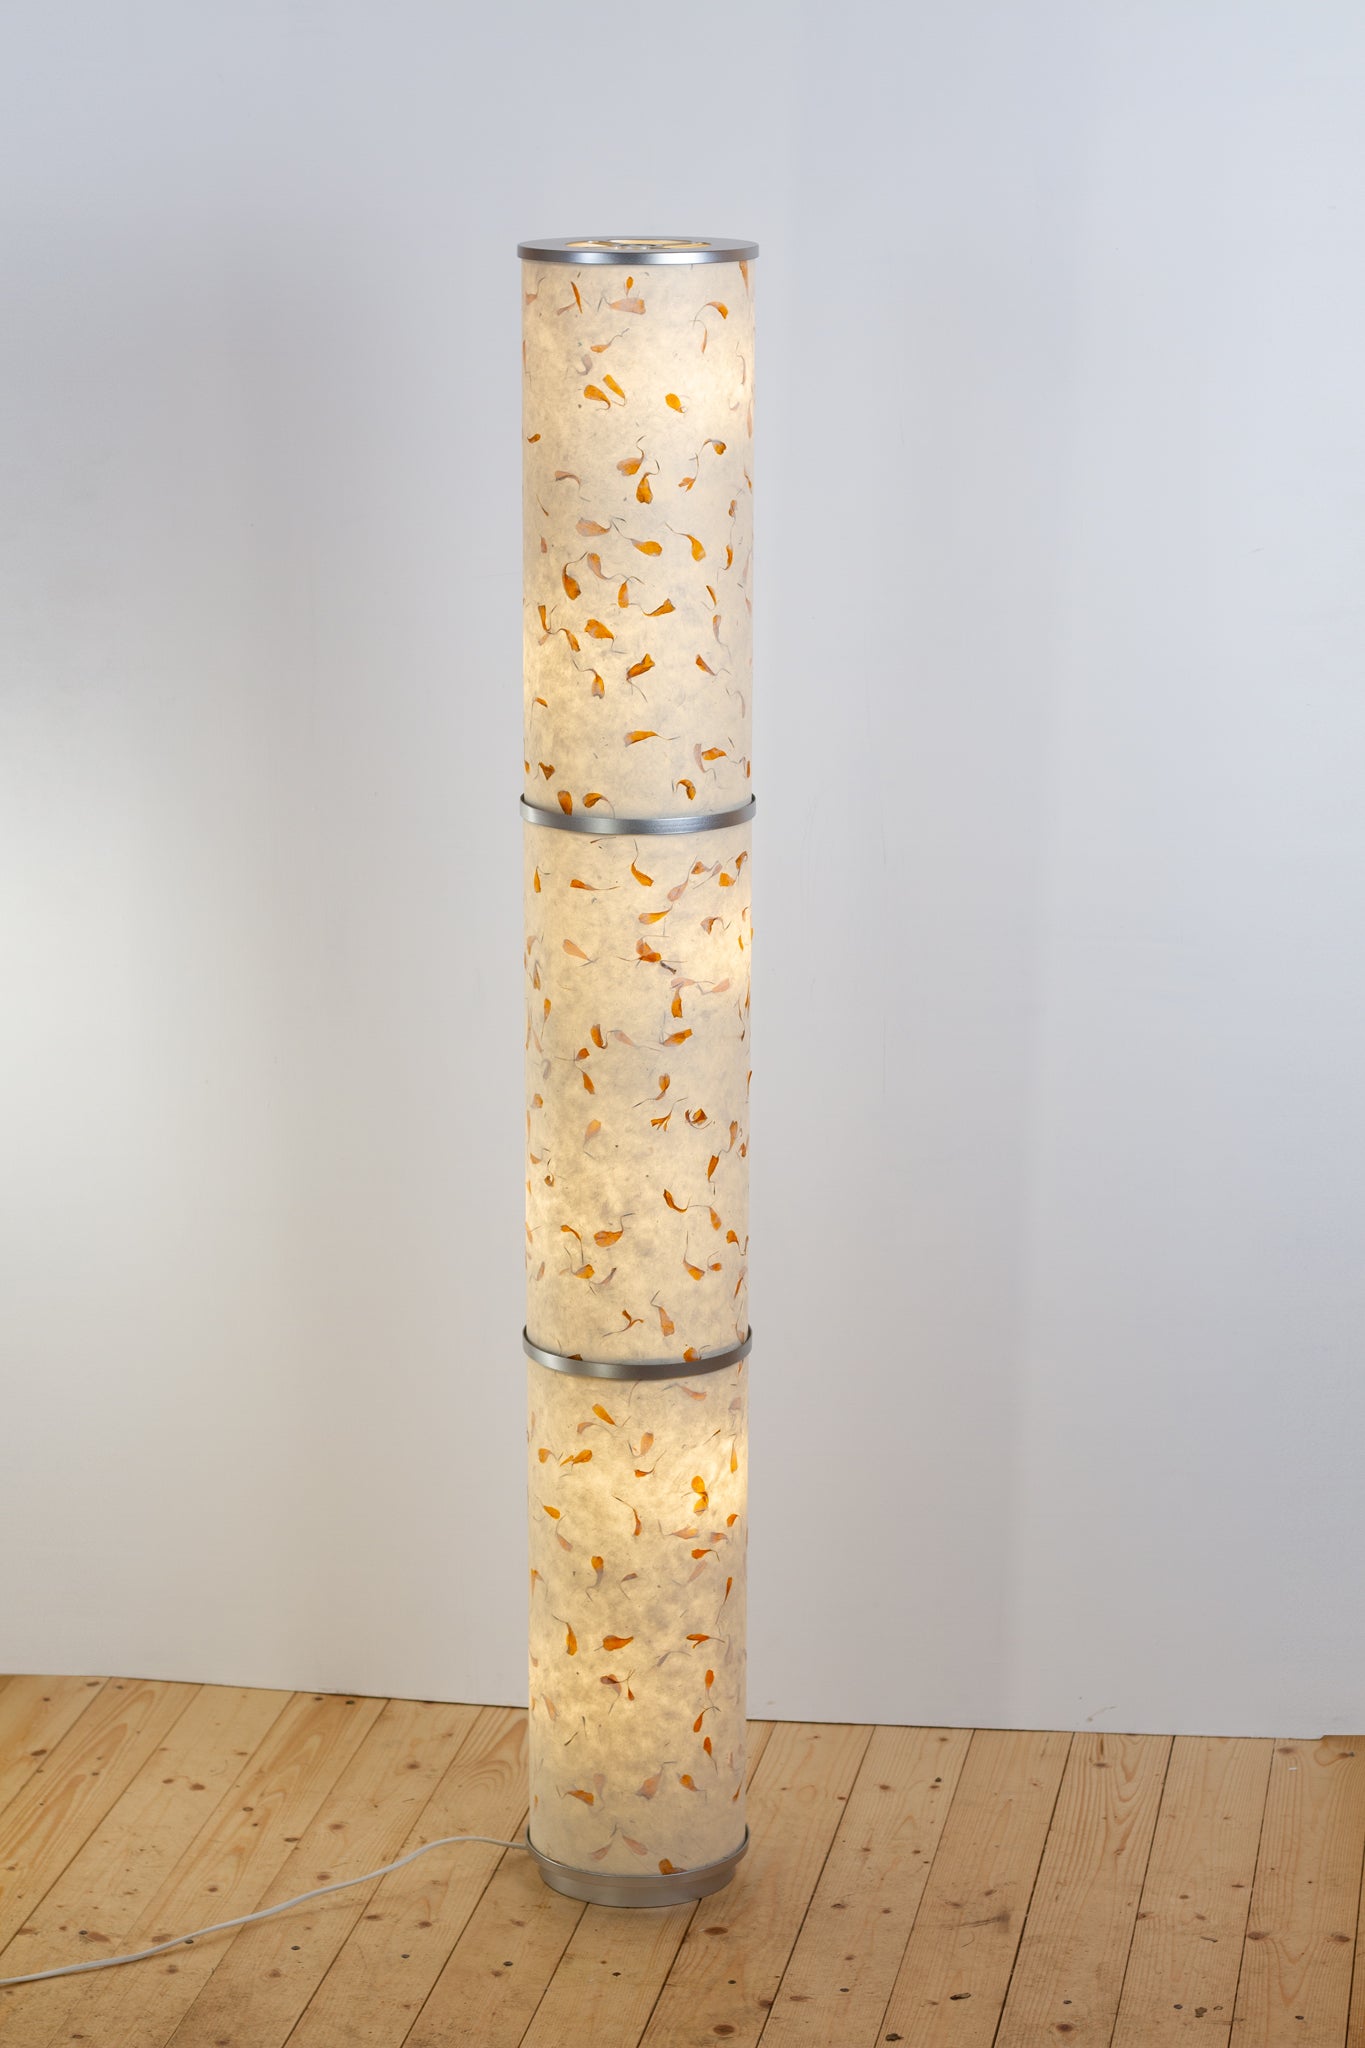 3 Panel Floor Lamp - P32 - Marigold Petals on Natural Lokta, 20cm(d) x 1.4m(h)